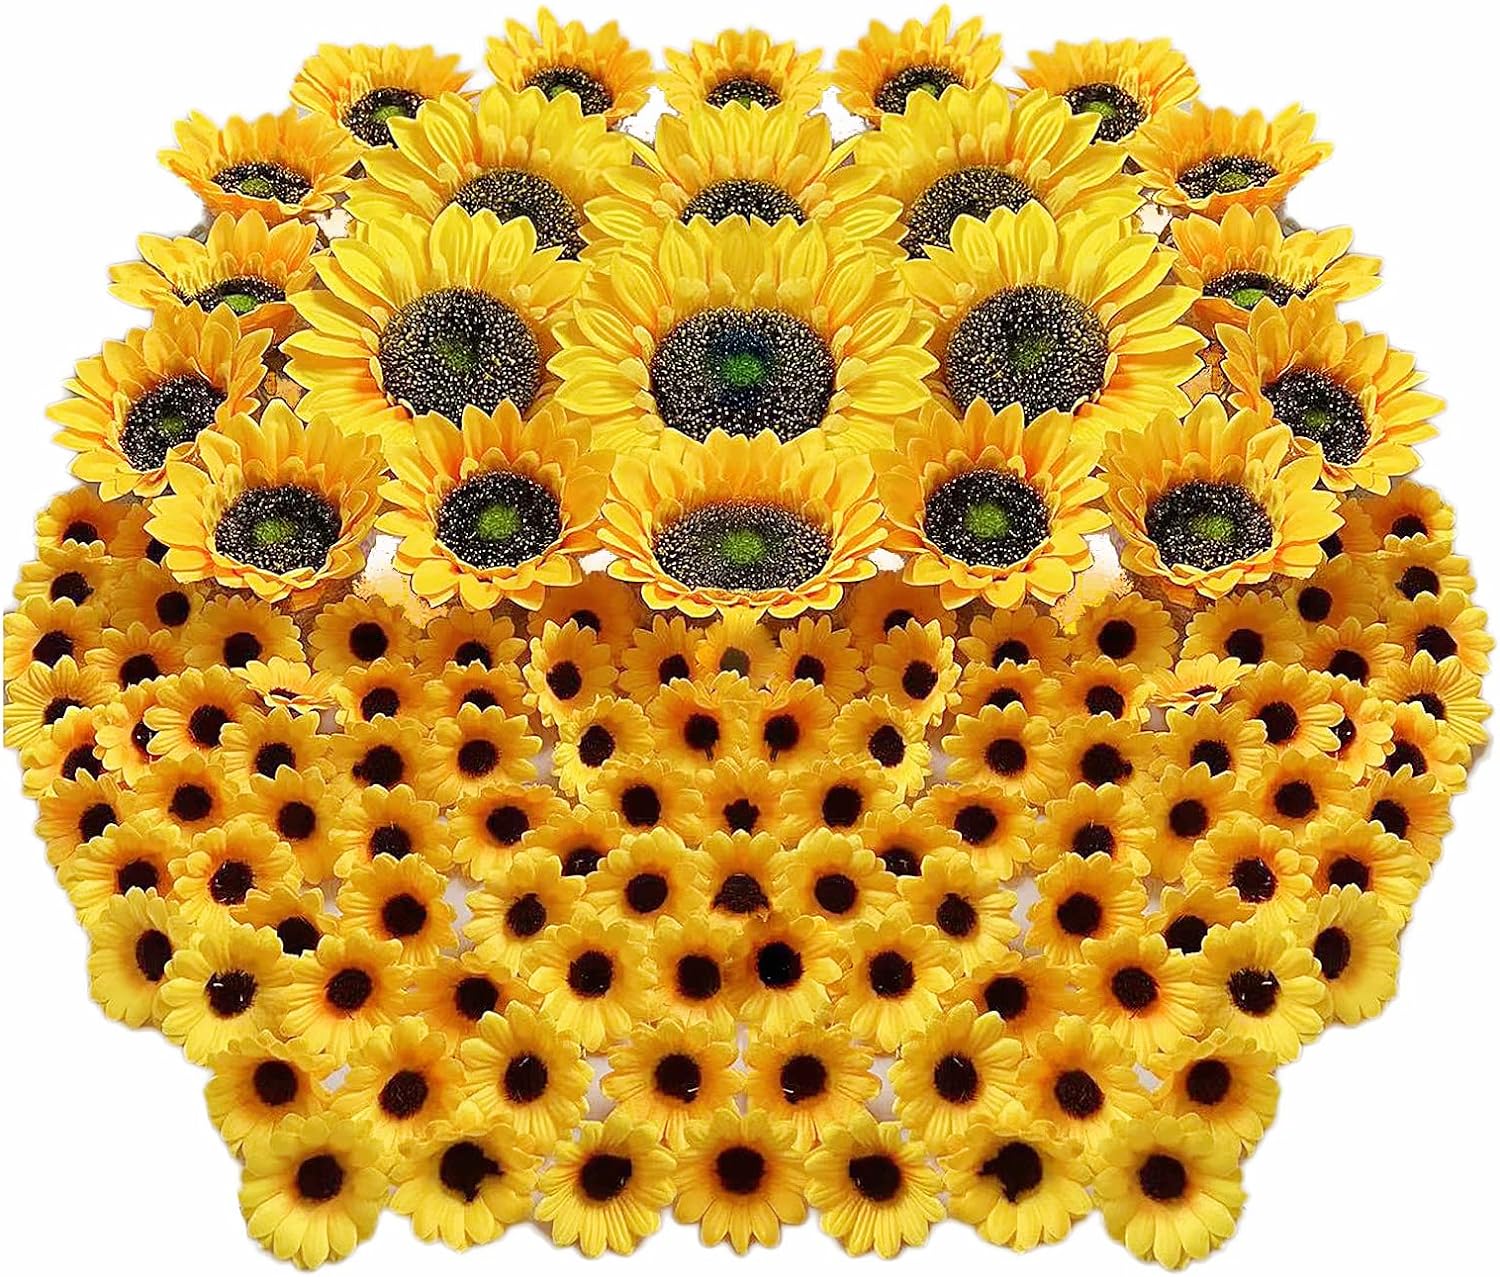 UKELER 122pcs Artificial Sunflower Heads 5.1'' 3.5'' 1.5'' Yellow Sunflower Artificial Flowers for Home Decoration Wedding Decor Birthday Party Decor Garden Craft Art Decor